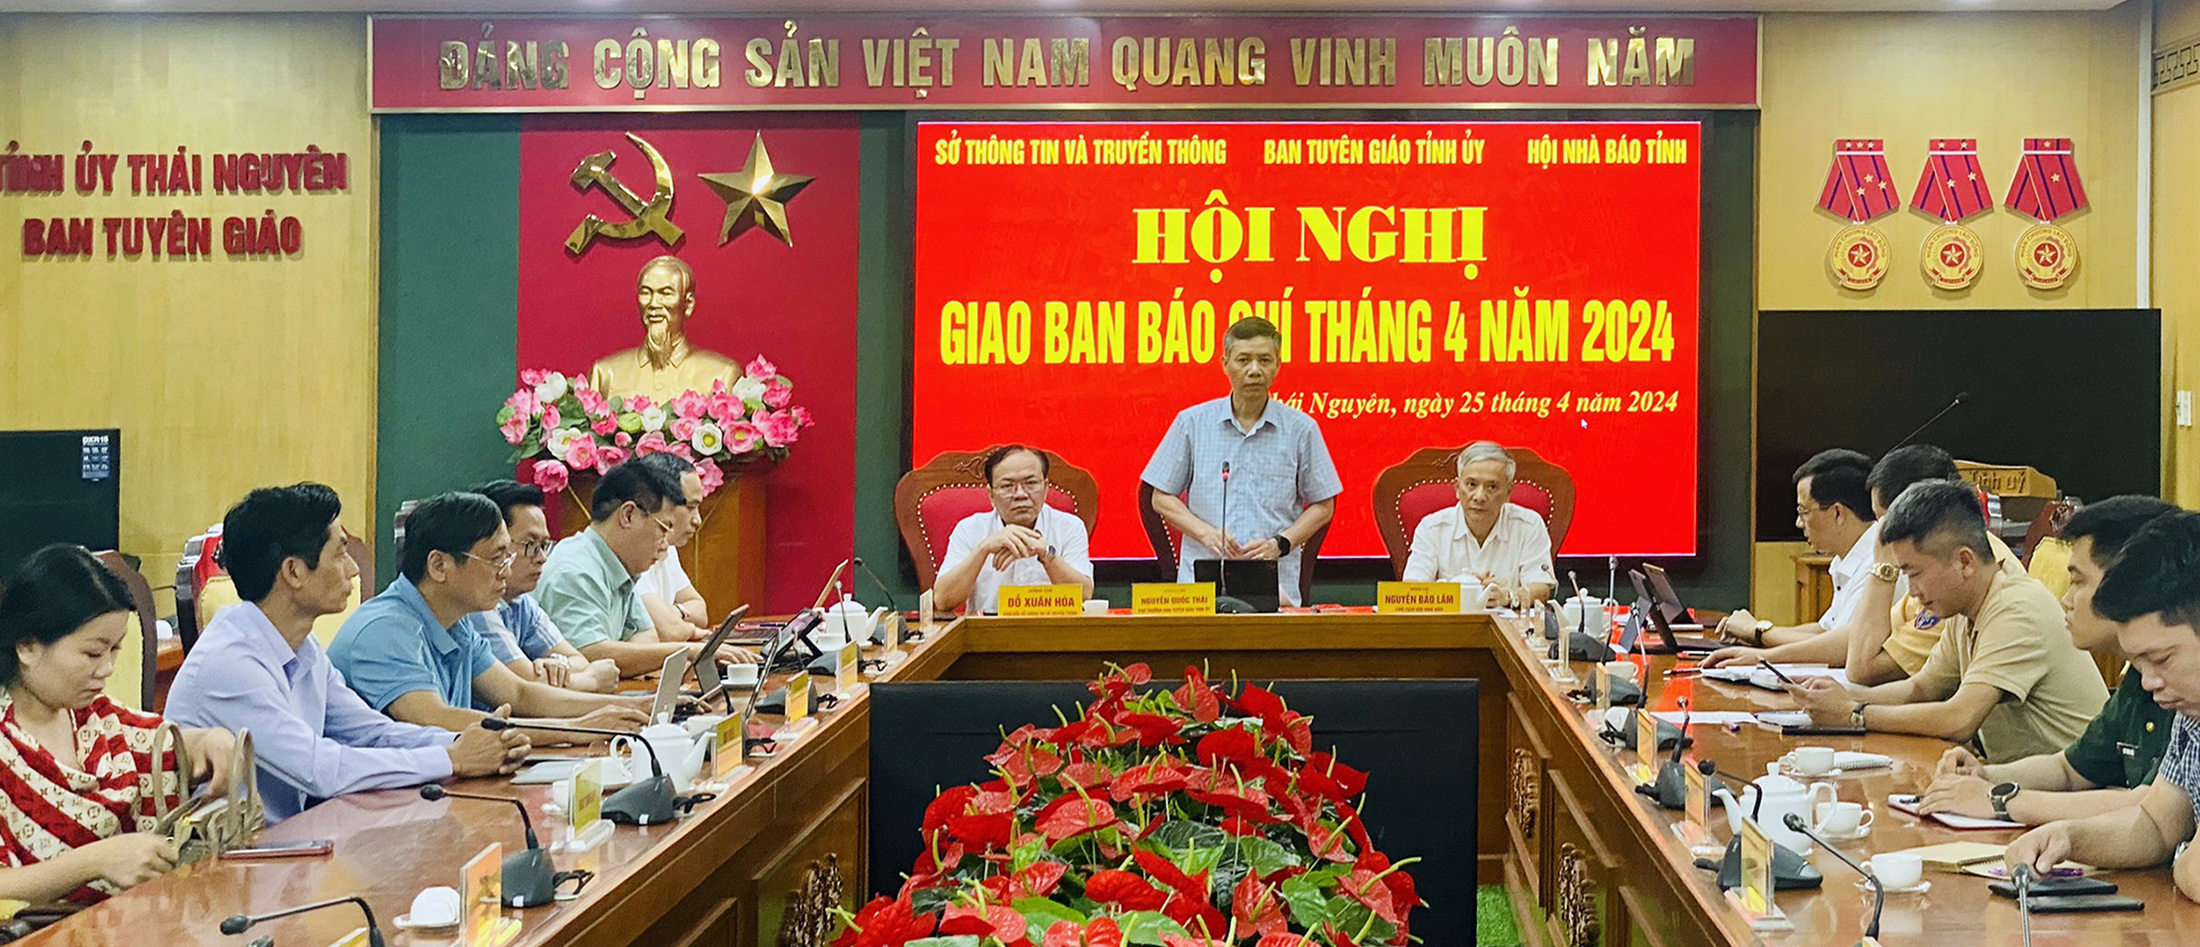 Đồng chí Nguyễn Quốc Thái, Phó Trưởng ban Tuyên giáo Tỉnh ủy định hướng công tác tuyên truyền báo chí trong thời gian tới